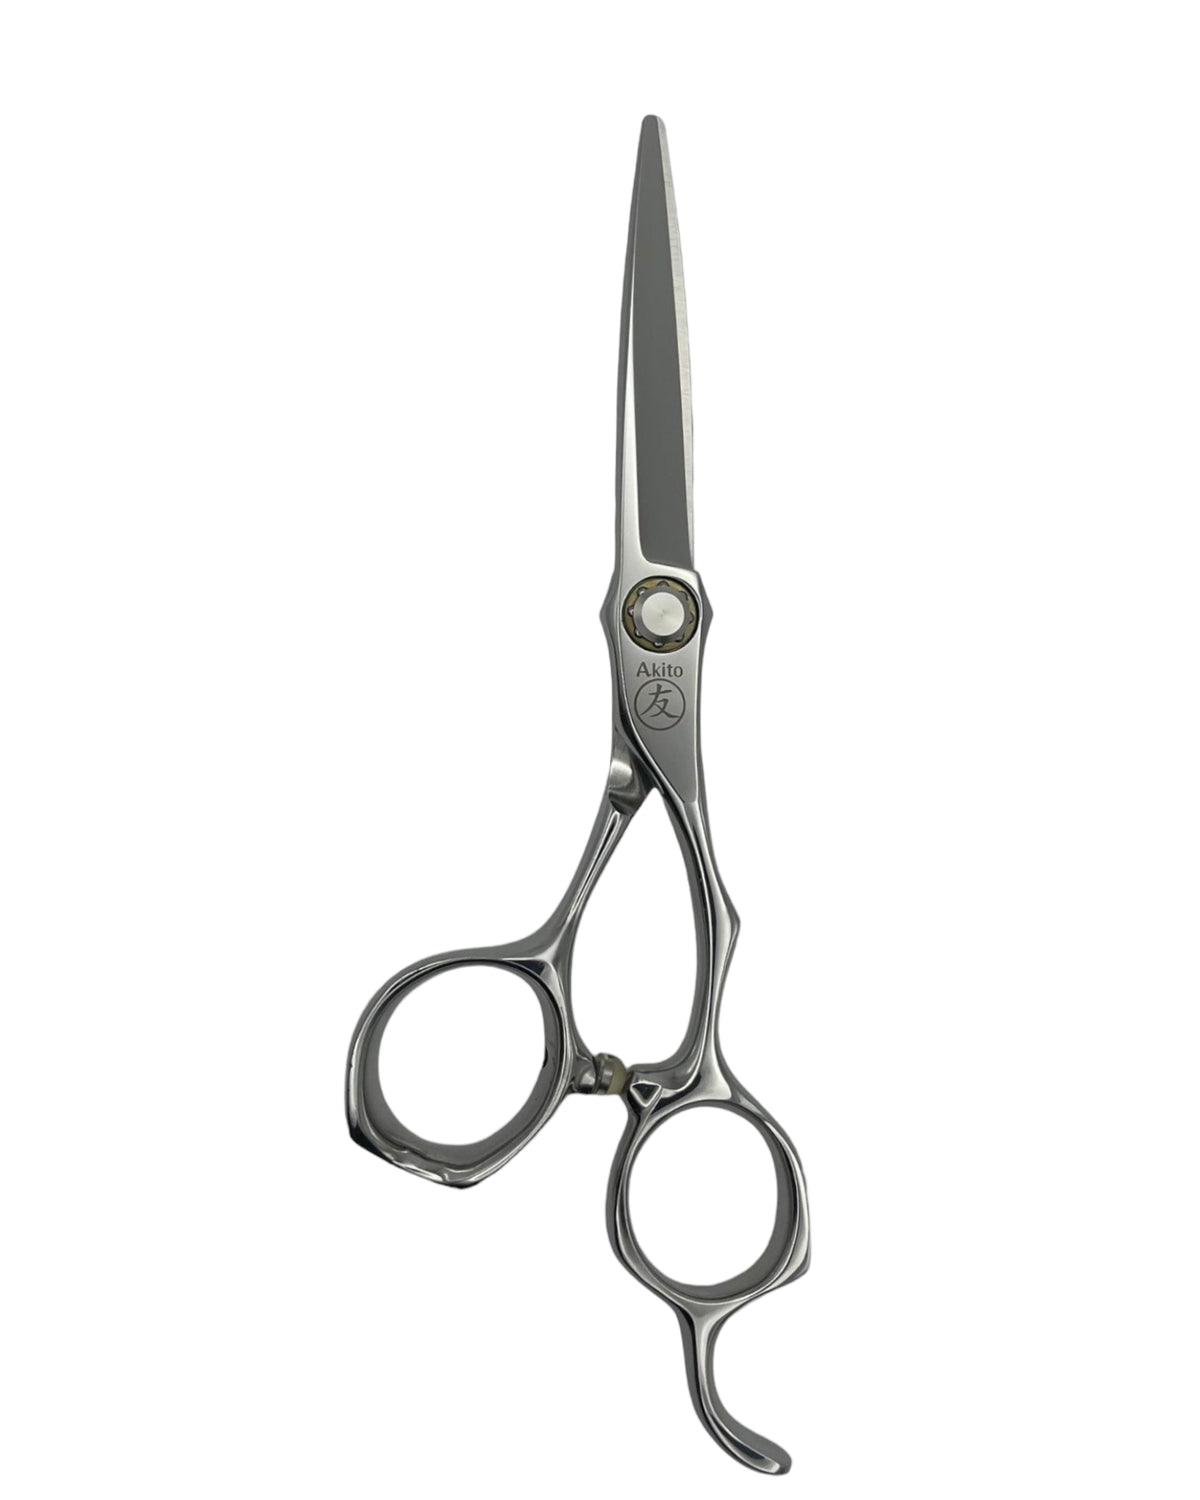 Kasai X hair cutting scissors